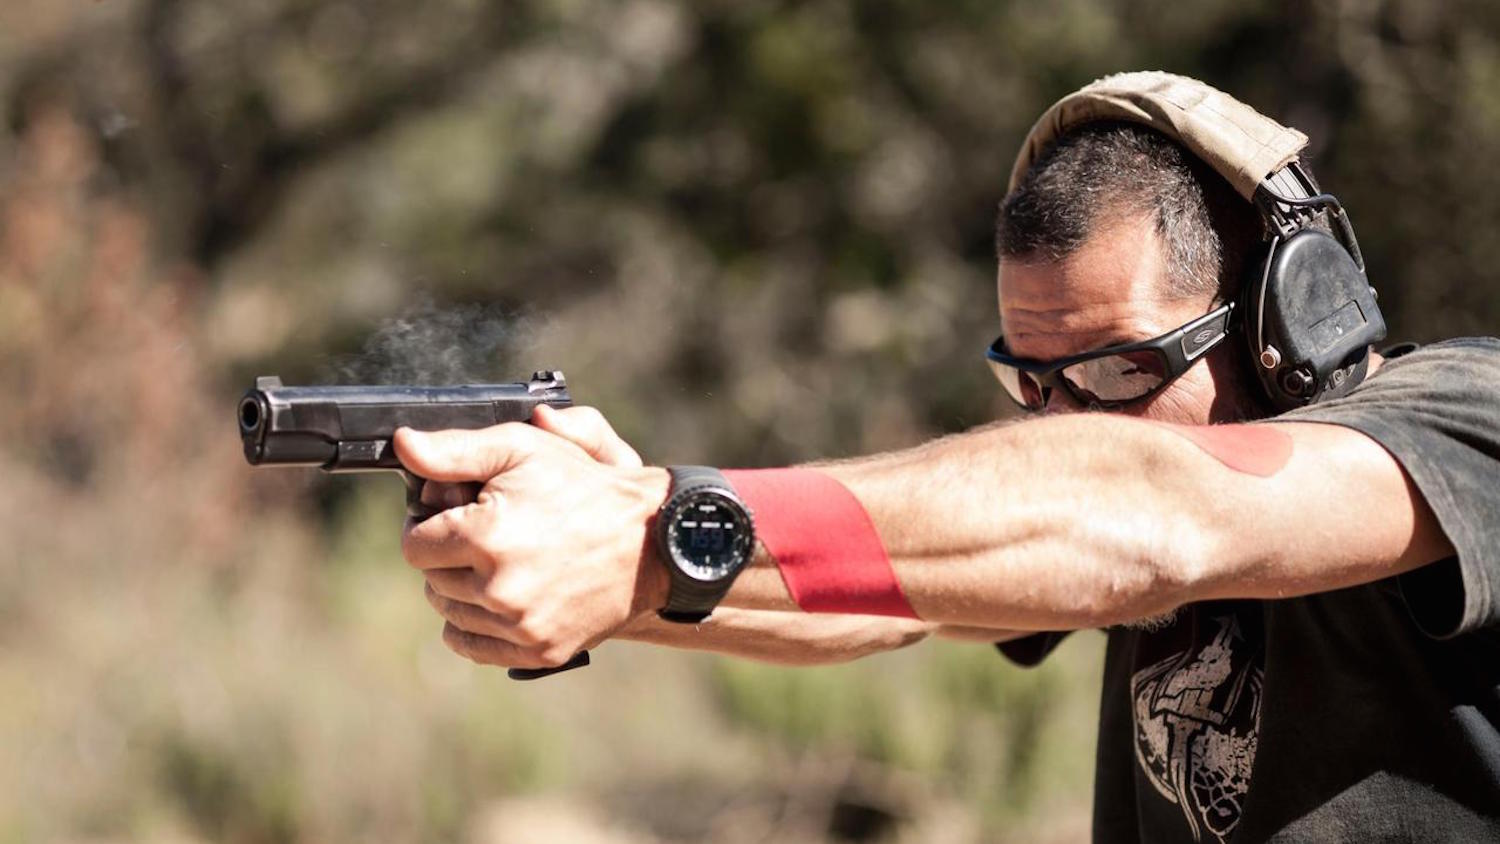 Get A Grip: Proper Grip Essential For Shooting Precision